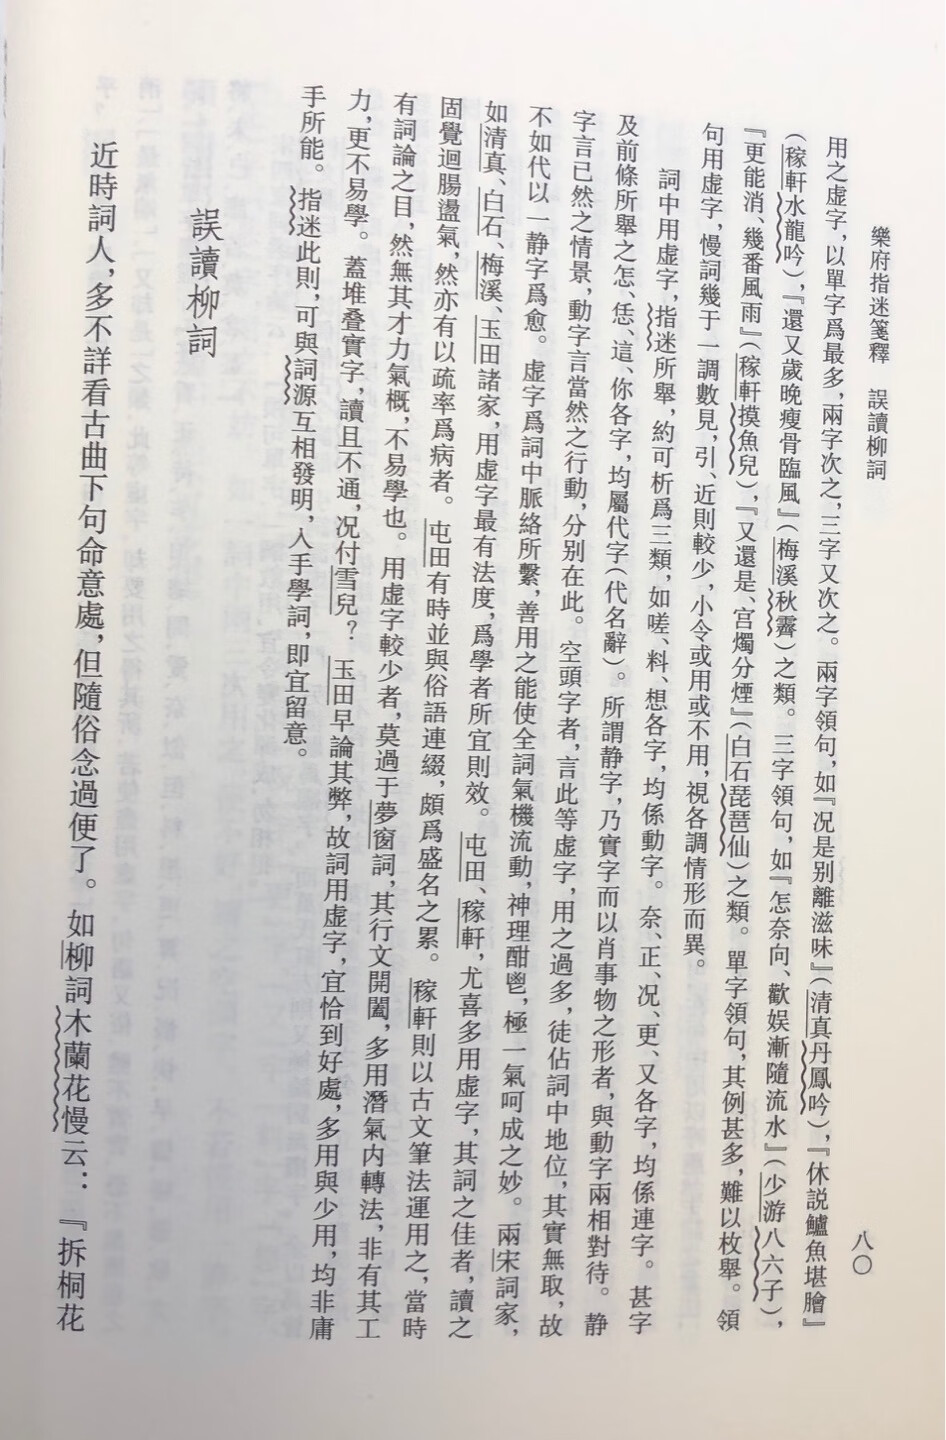 人民文学出版社的中国古典文学理论批评专著选辑丛书，印刷清晰，版式疏朗，且折扣较好，值得下手。